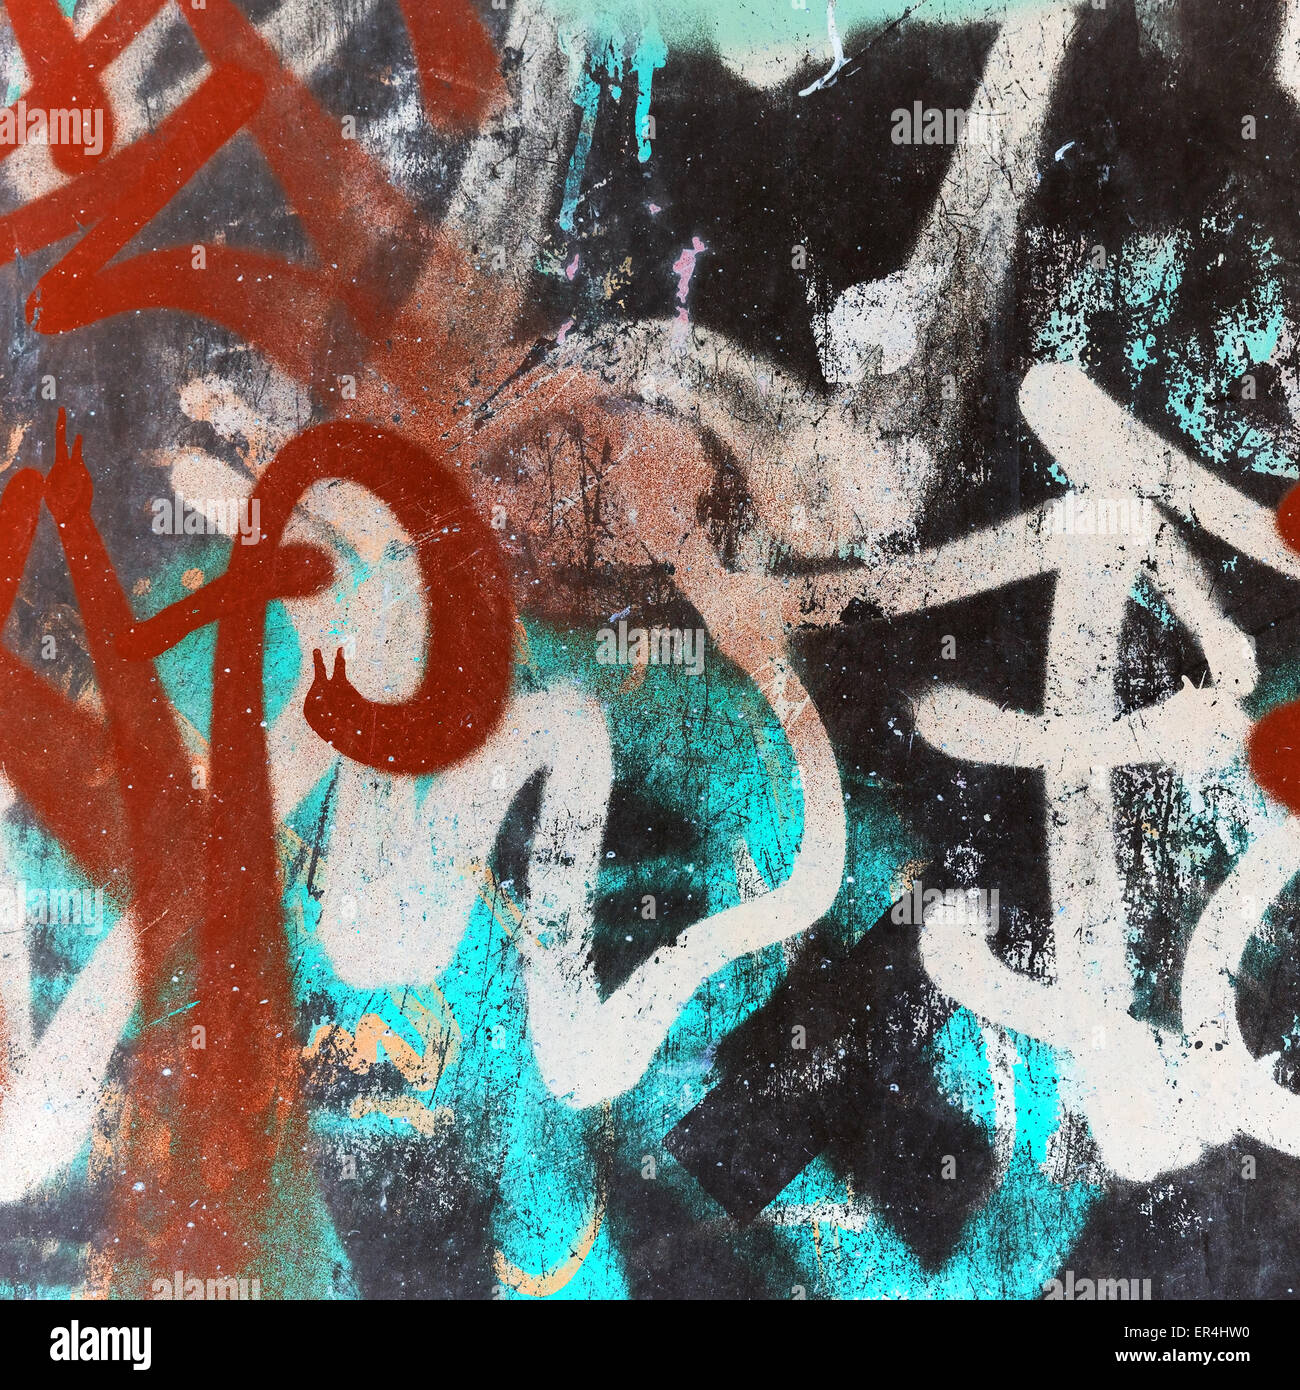 Abstract graffiti scuro frammento quadrato, vintage foto tonale effetti filtro, uno stile rétro Foto Stock